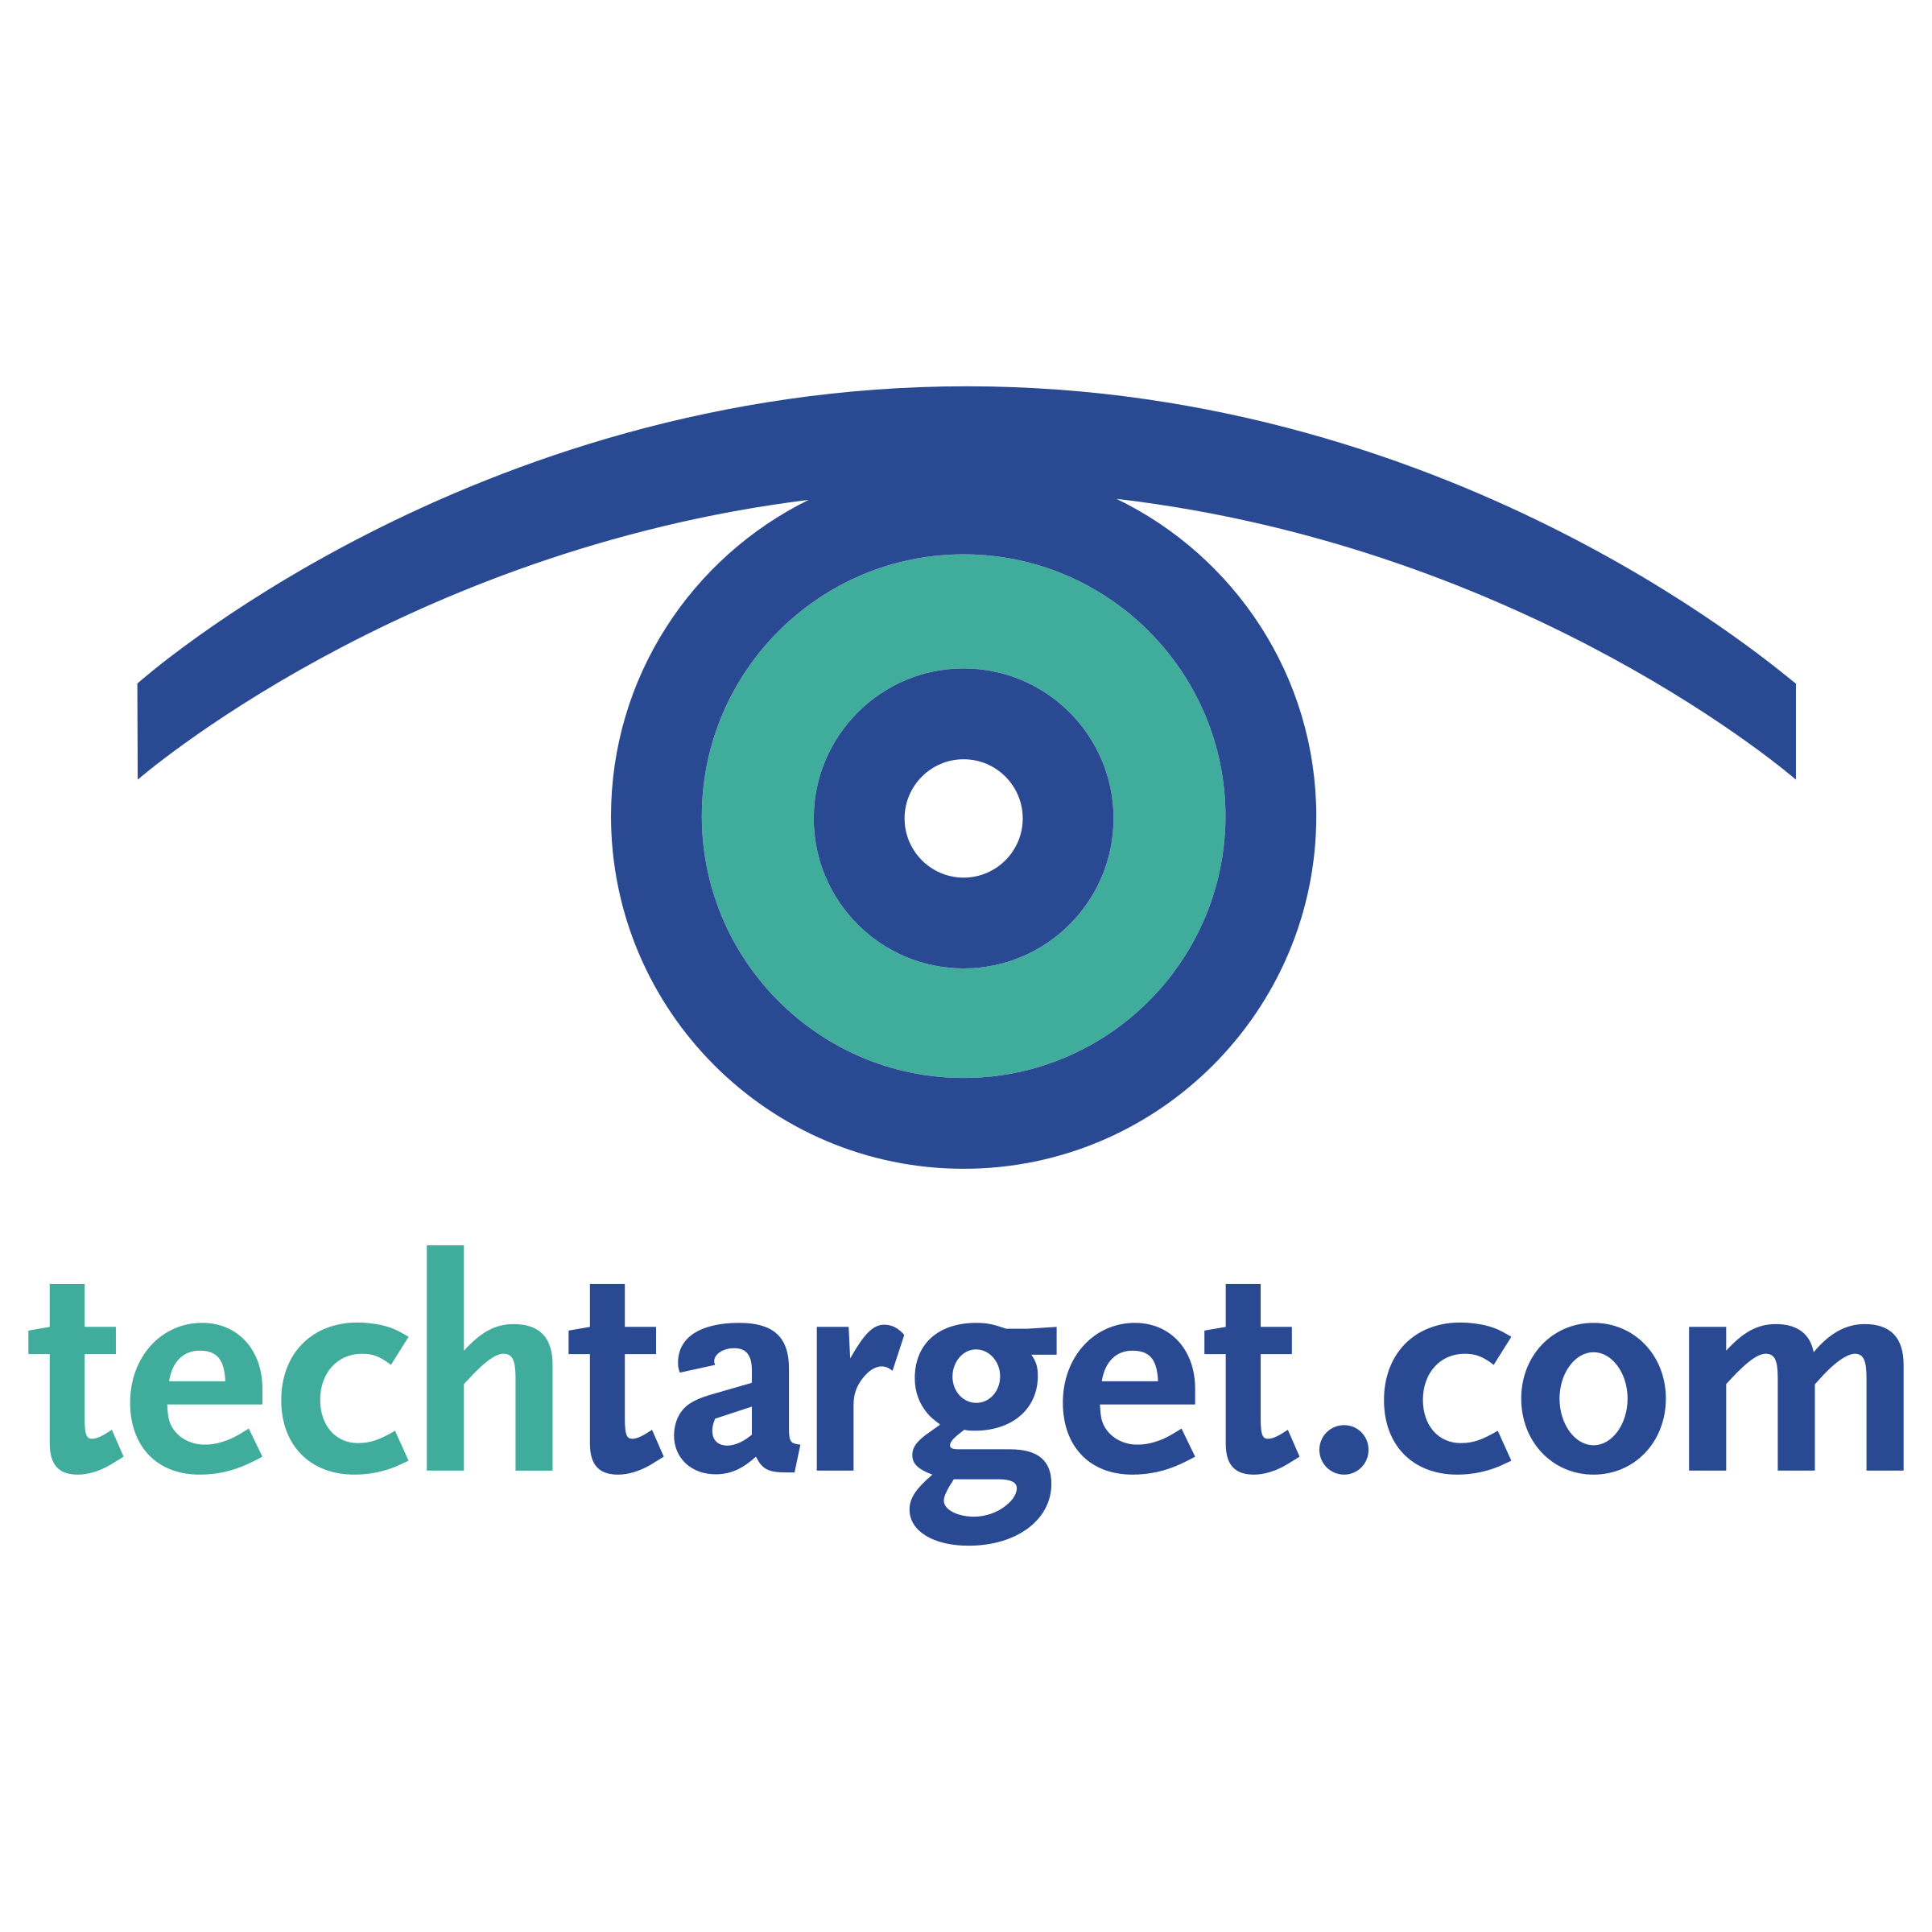 techtarget logo png transparent